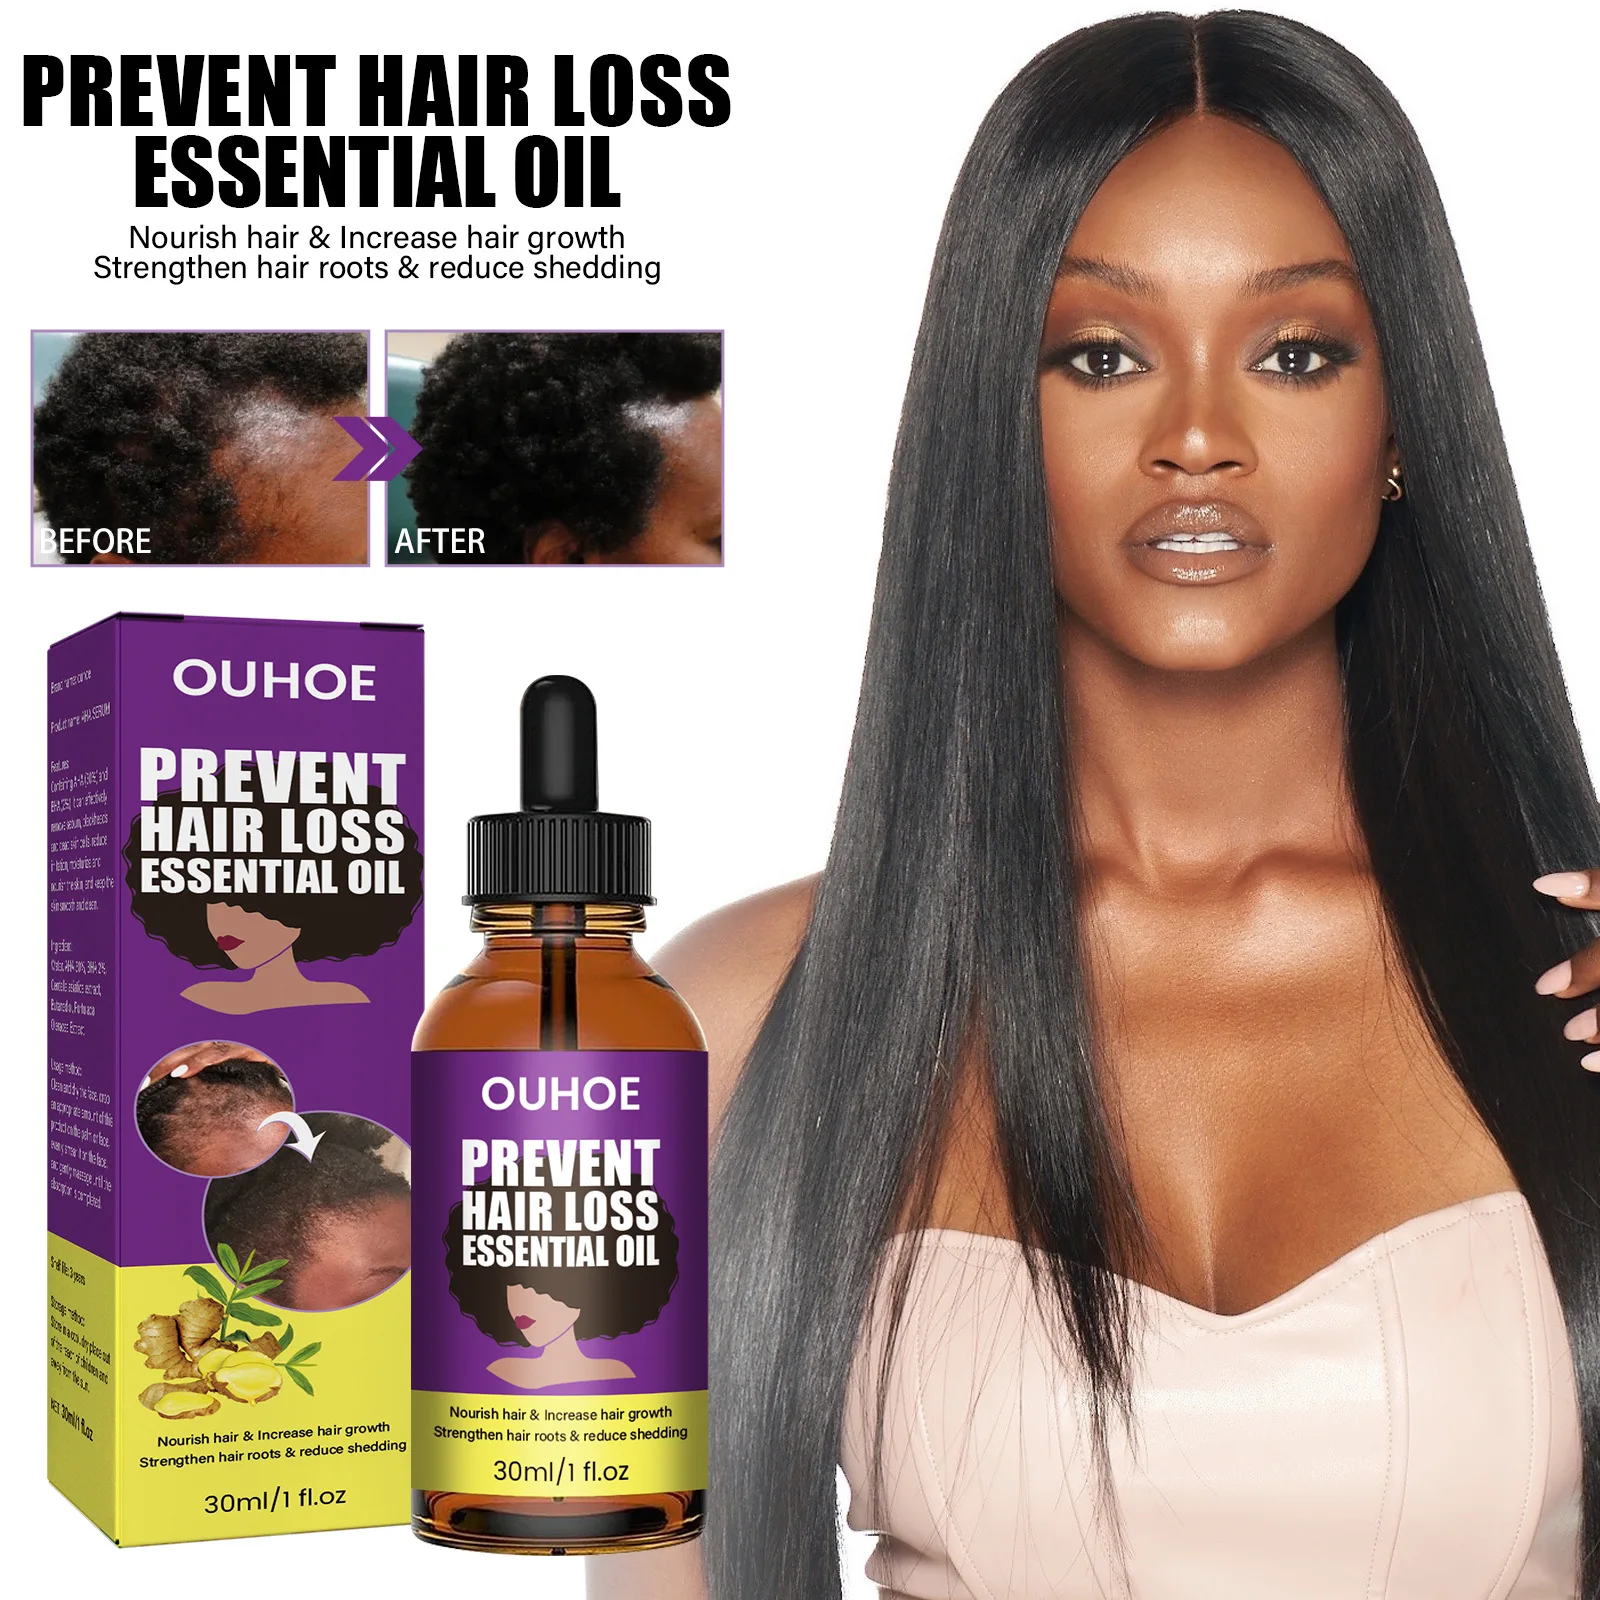 

30ml Anti Alopecia Oil Hair Growth Essential Oils for Black Women Essence Anti-Hair Loss Hair Serum for Thinning Hair Thickening